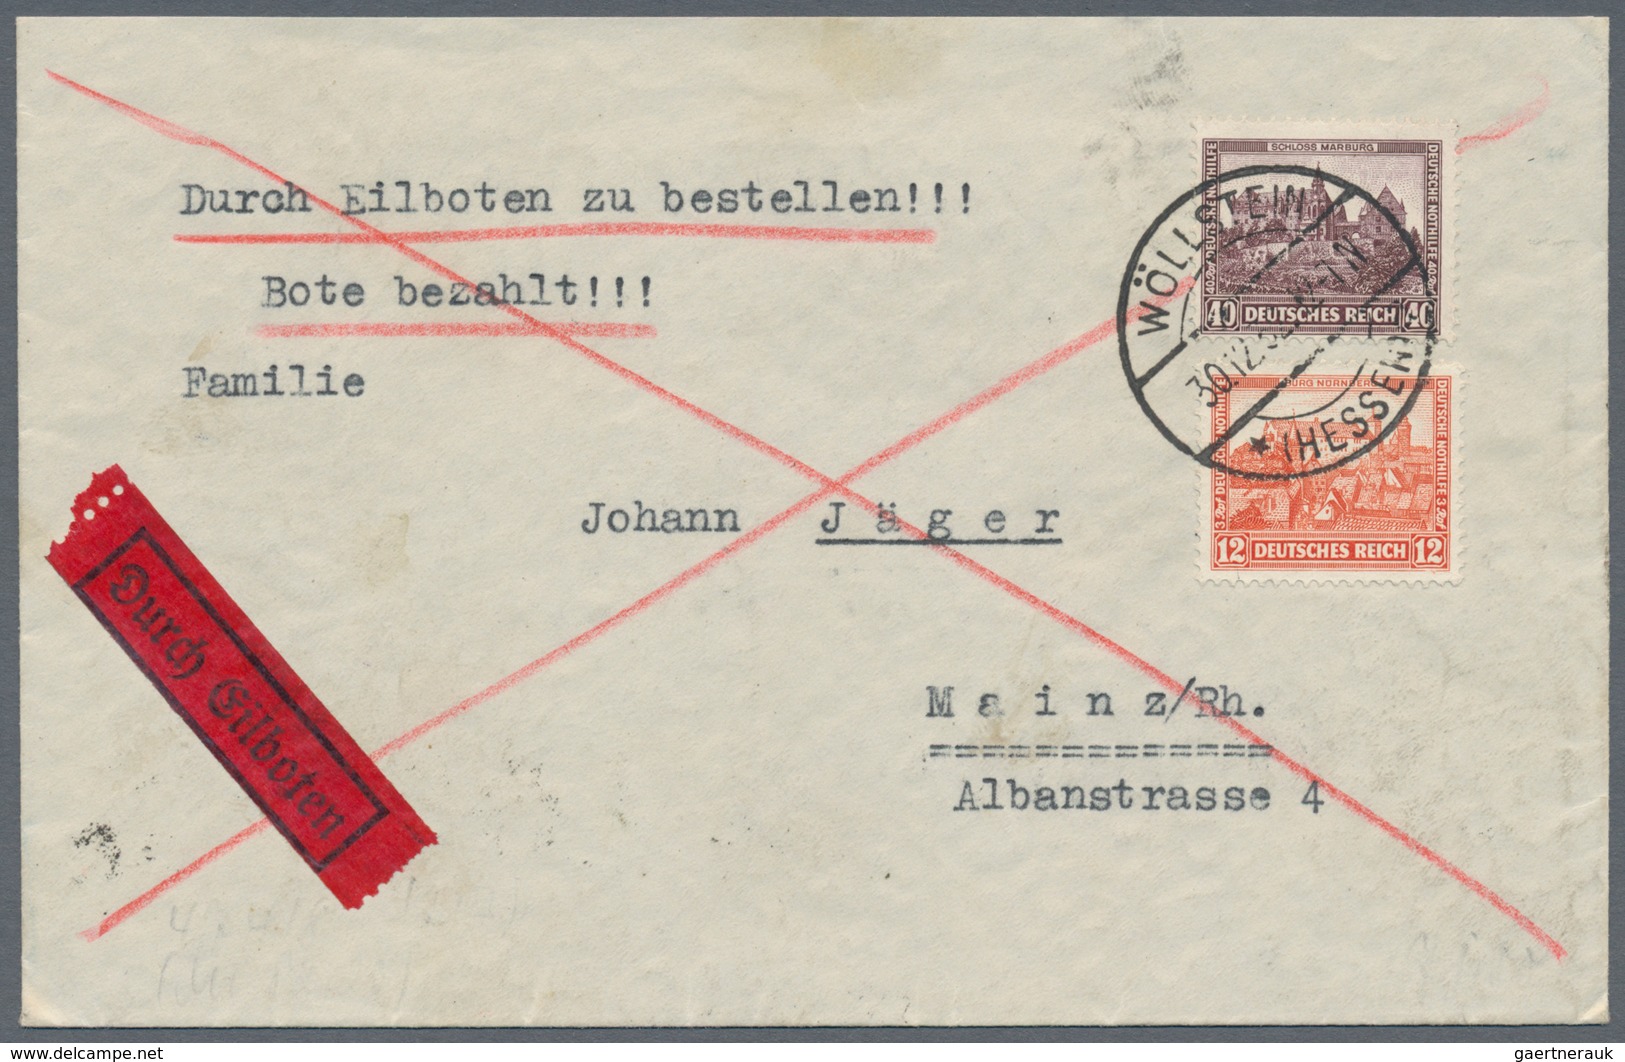 Deutsches Reich - Weimar: 1923/1933, vielseitige Partie von ca. 350 Briefen und Karten, dabei nette